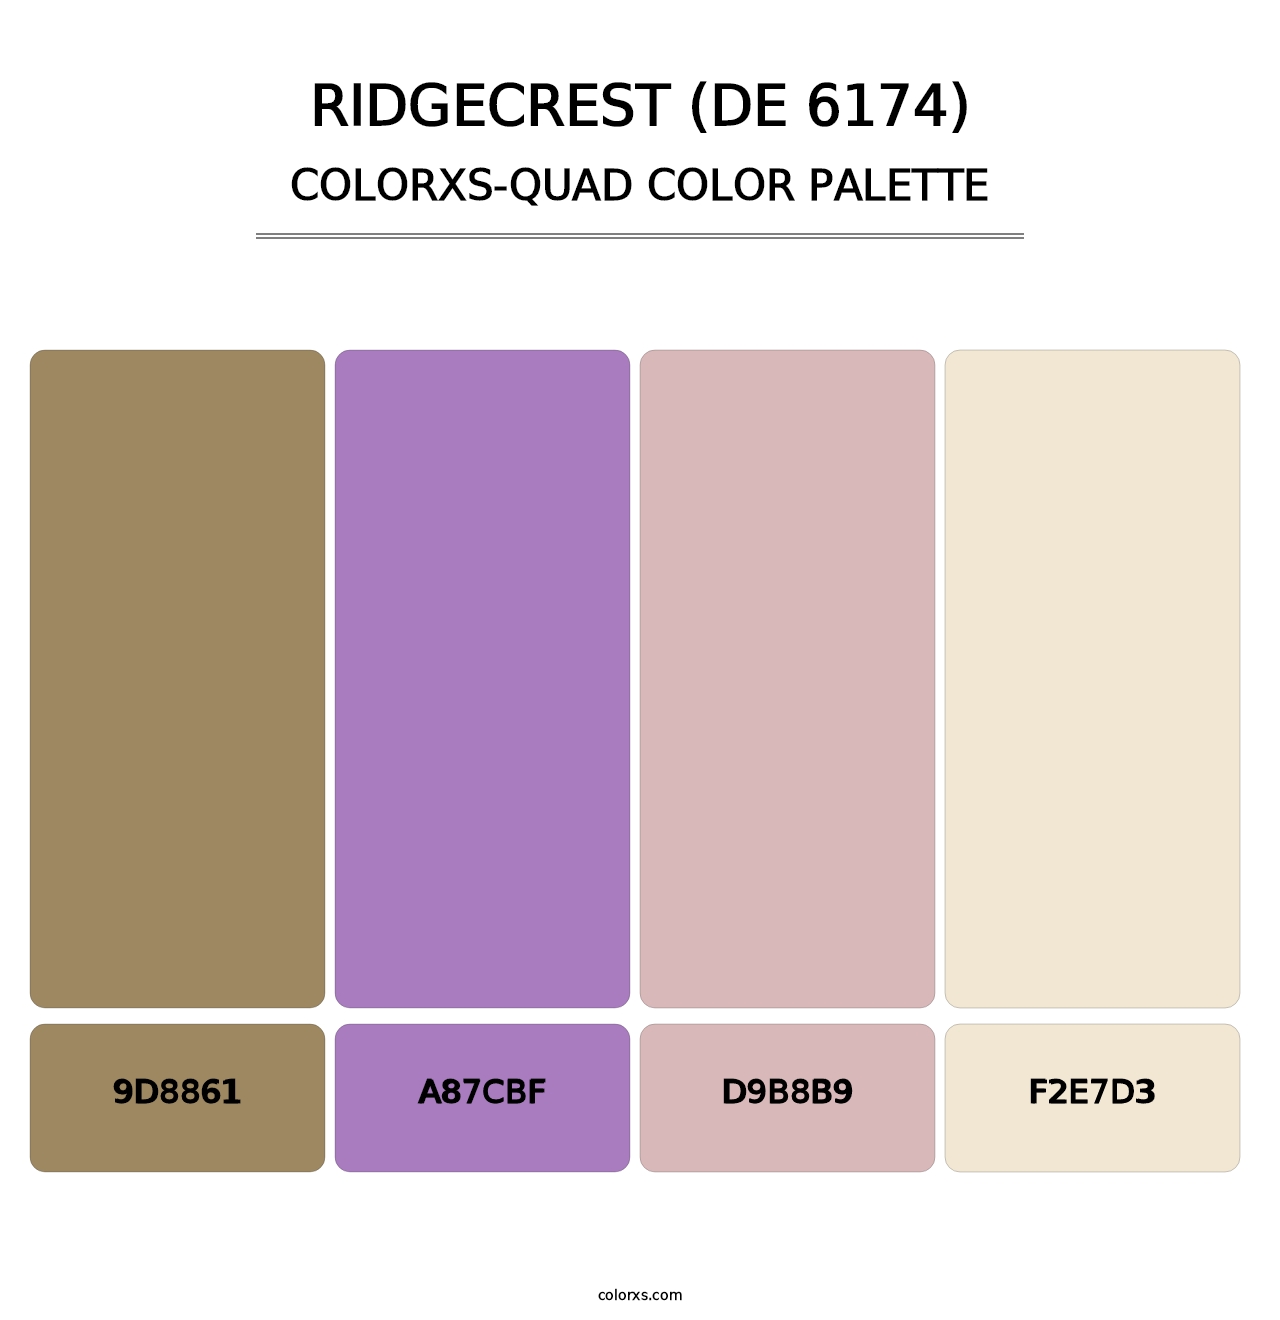 Ridgecrest (DE 6174) - Colorxs Quad Palette